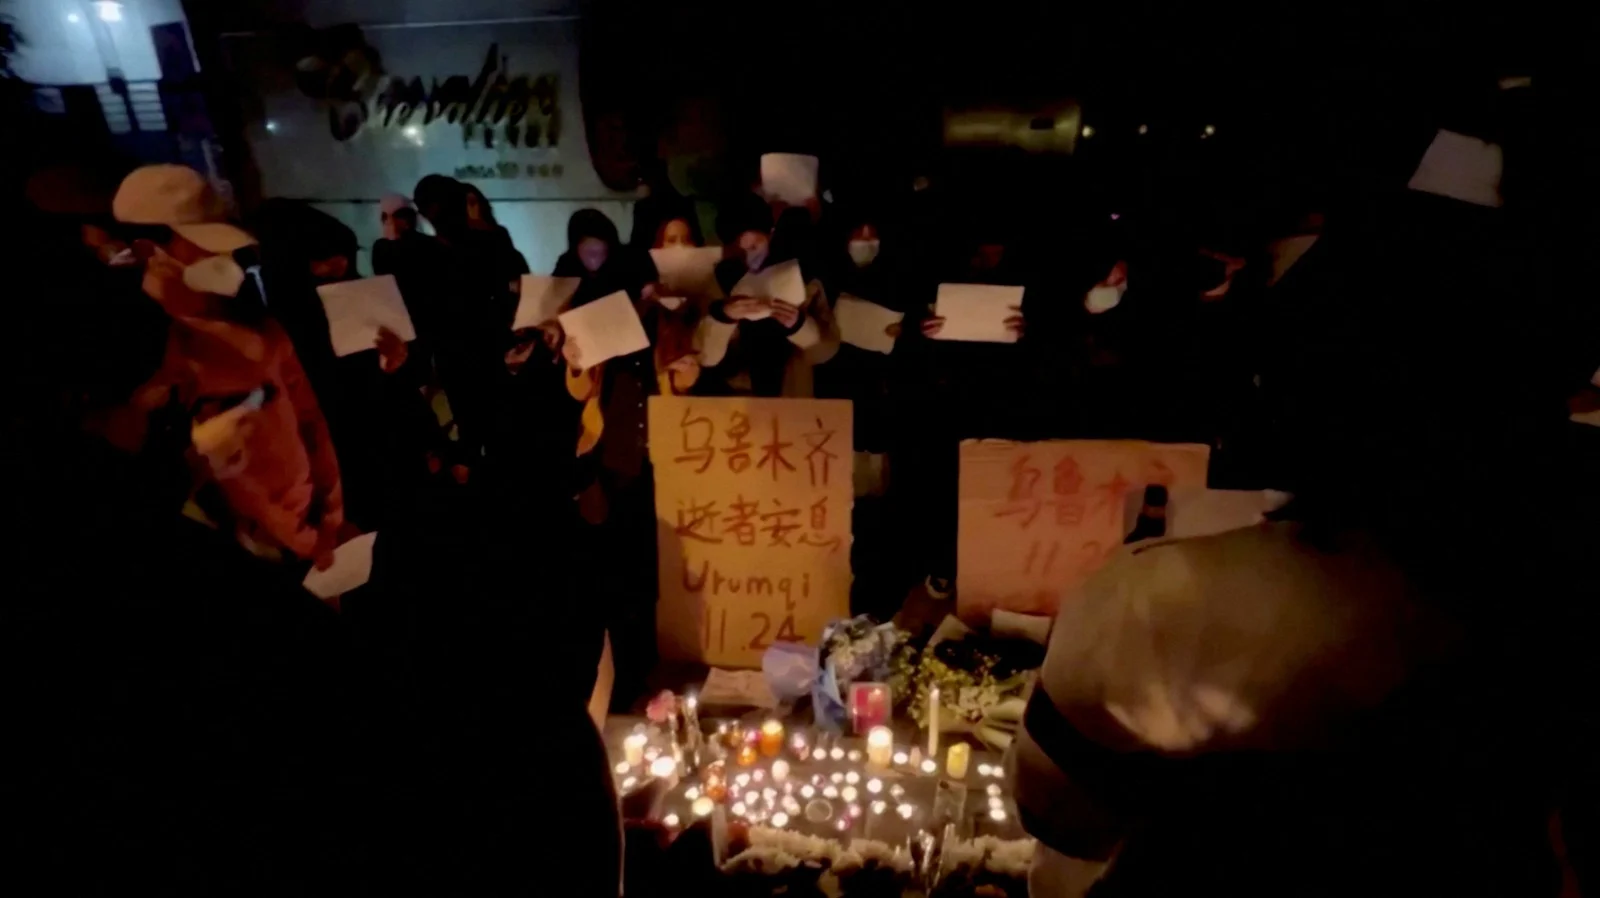 הפגנות נגד המשטר בשנגחאי